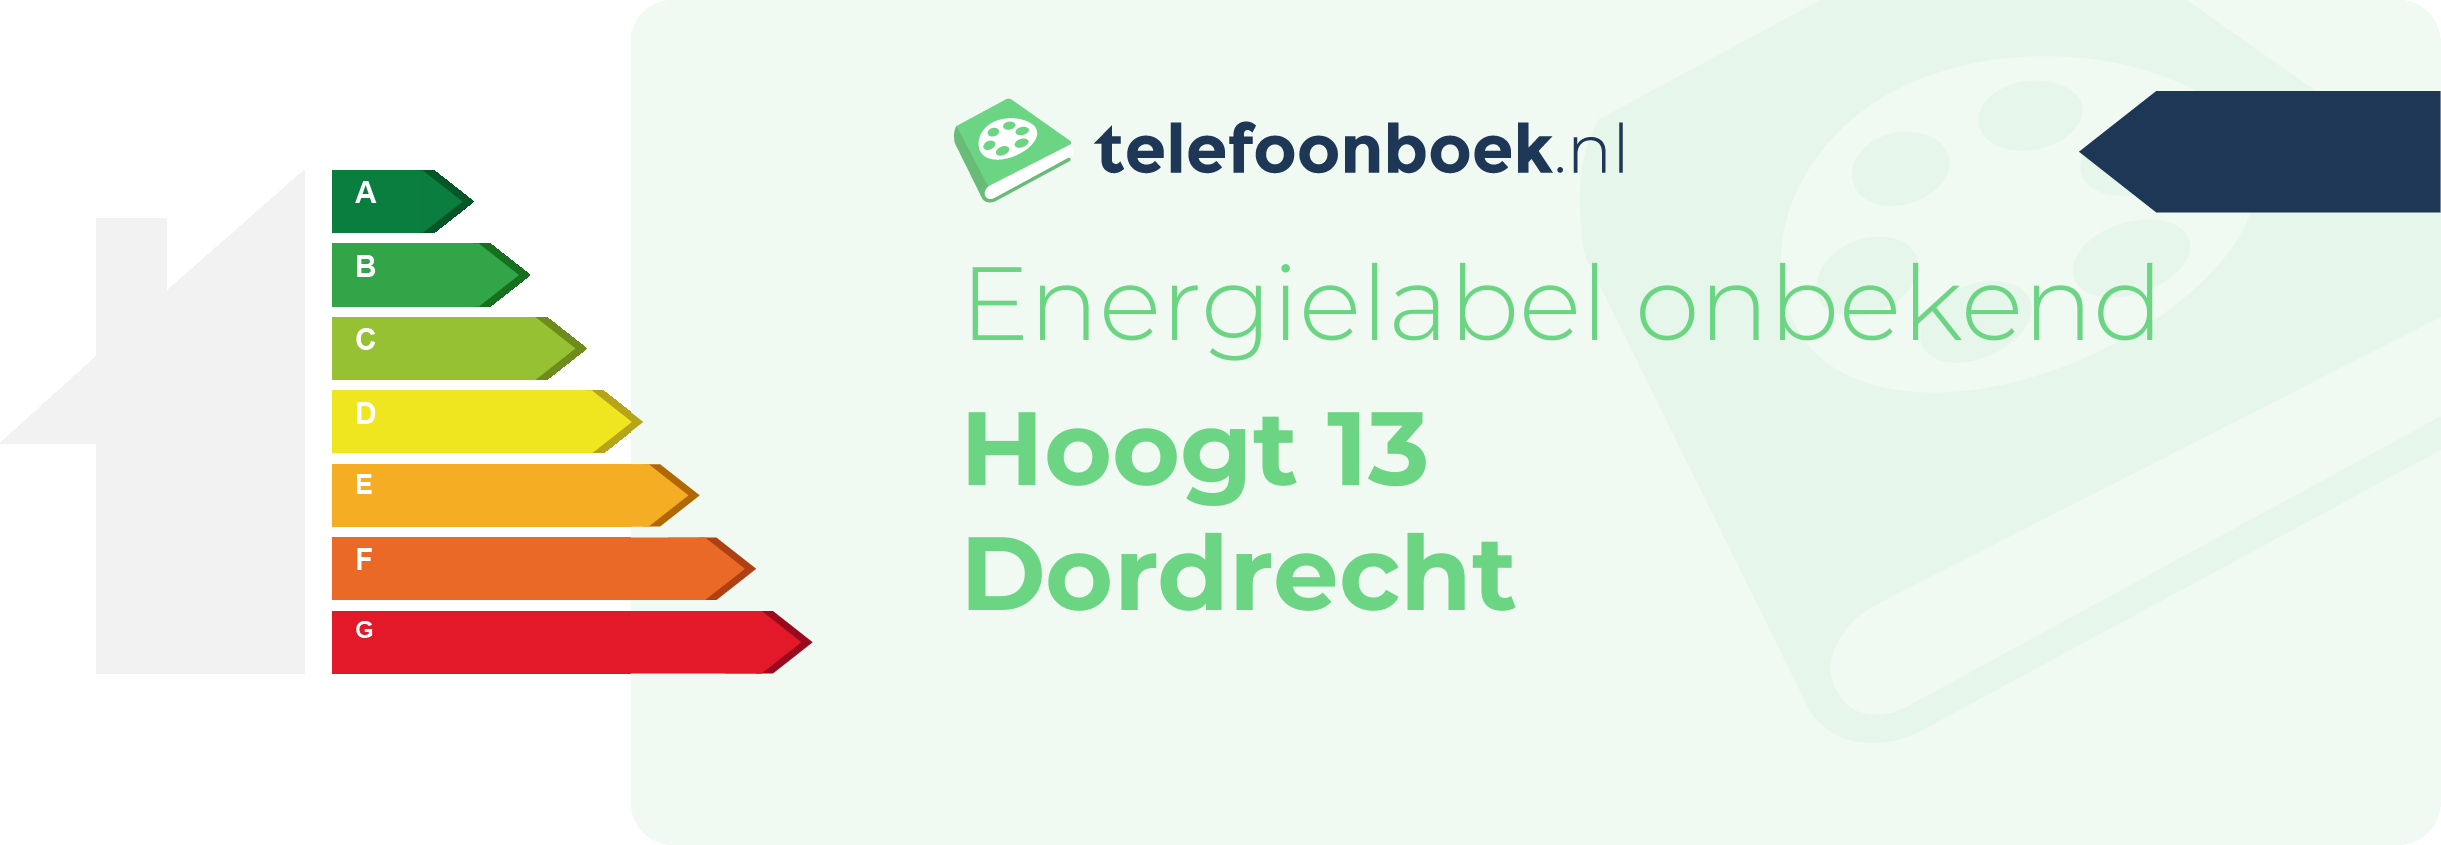 Energielabel Hoogt 13 Dordrecht